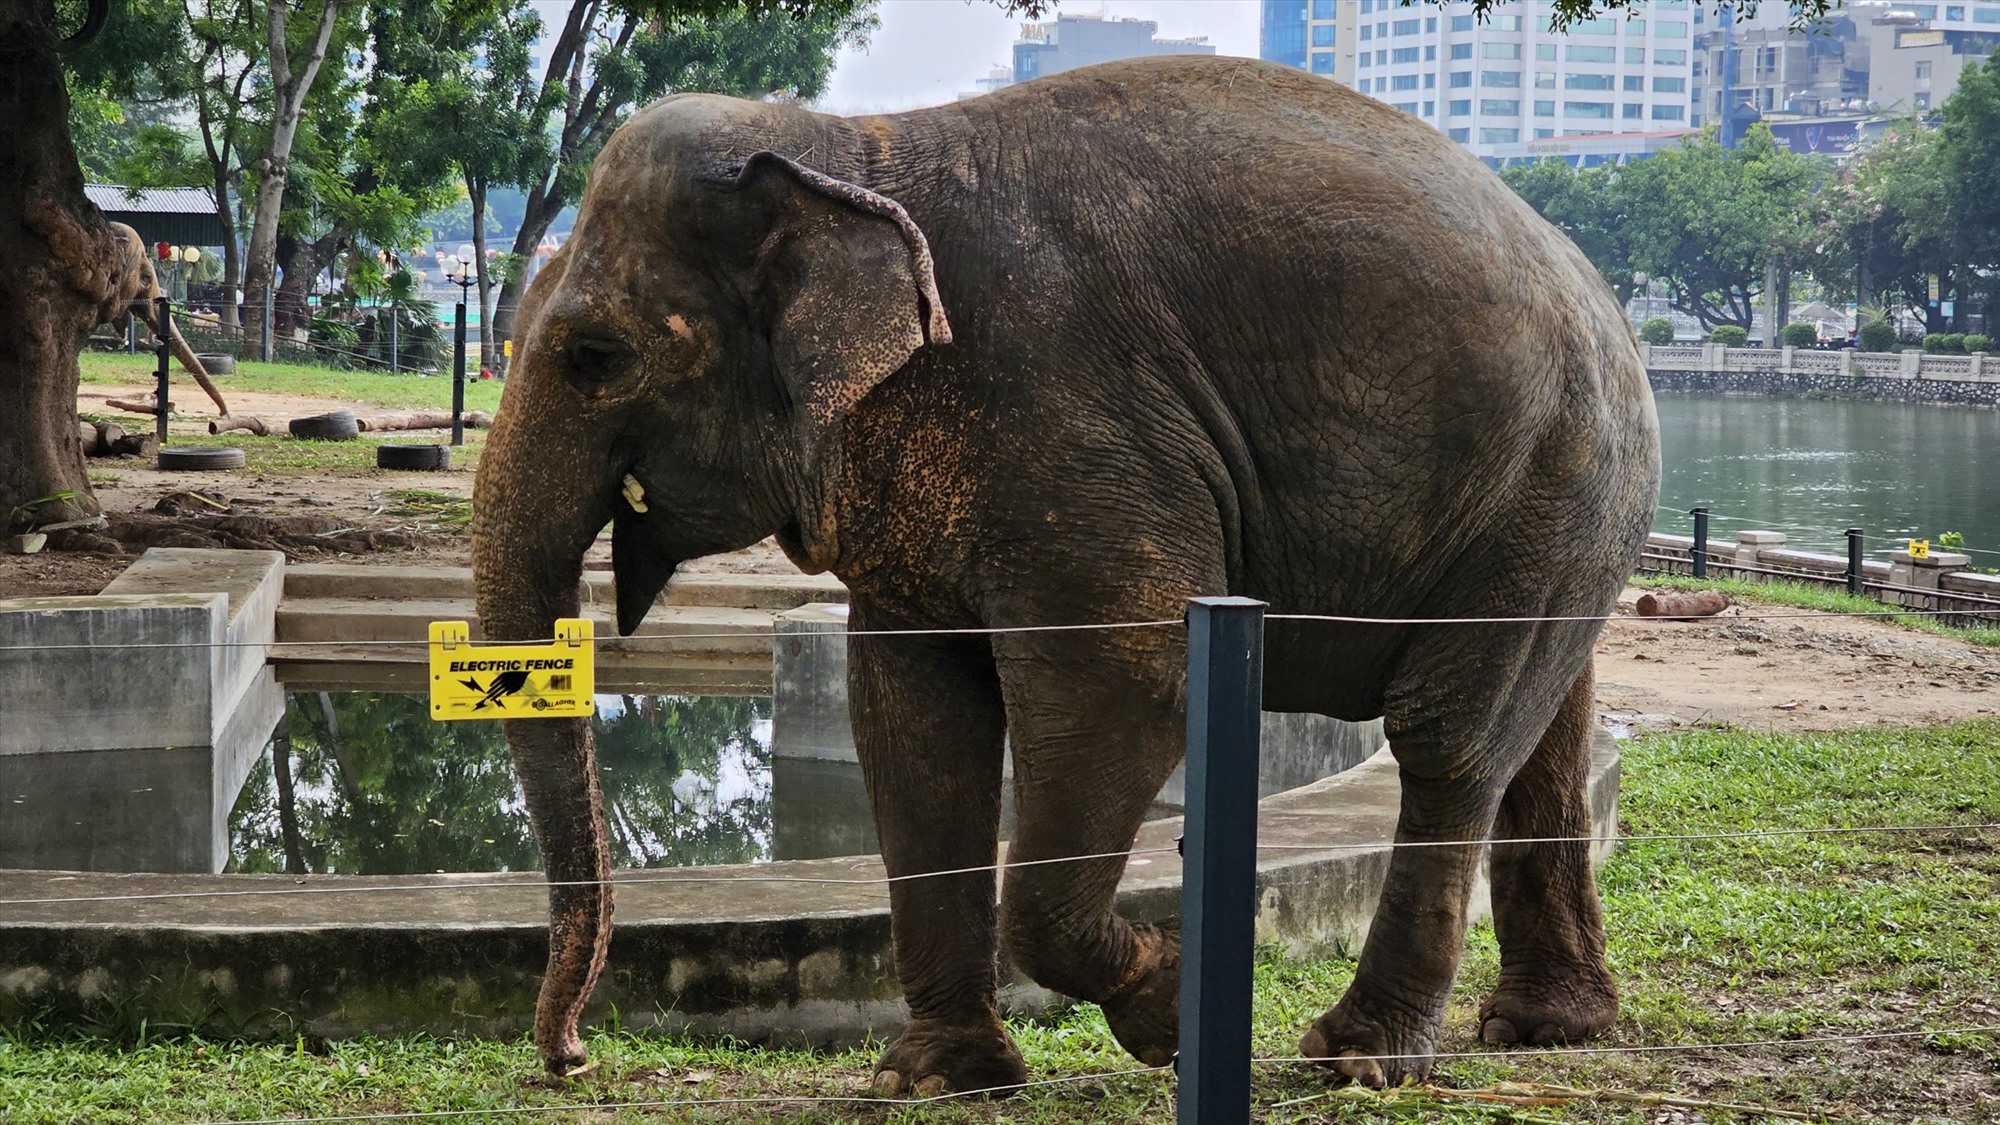 Nhiều người cảm thấy vui, phấn khởi khi lần này trở lại vườn thú đã thấy hai chú voi ở đây đã được tháo xích chân, vô tư dạo chơi trong khuôn viên.